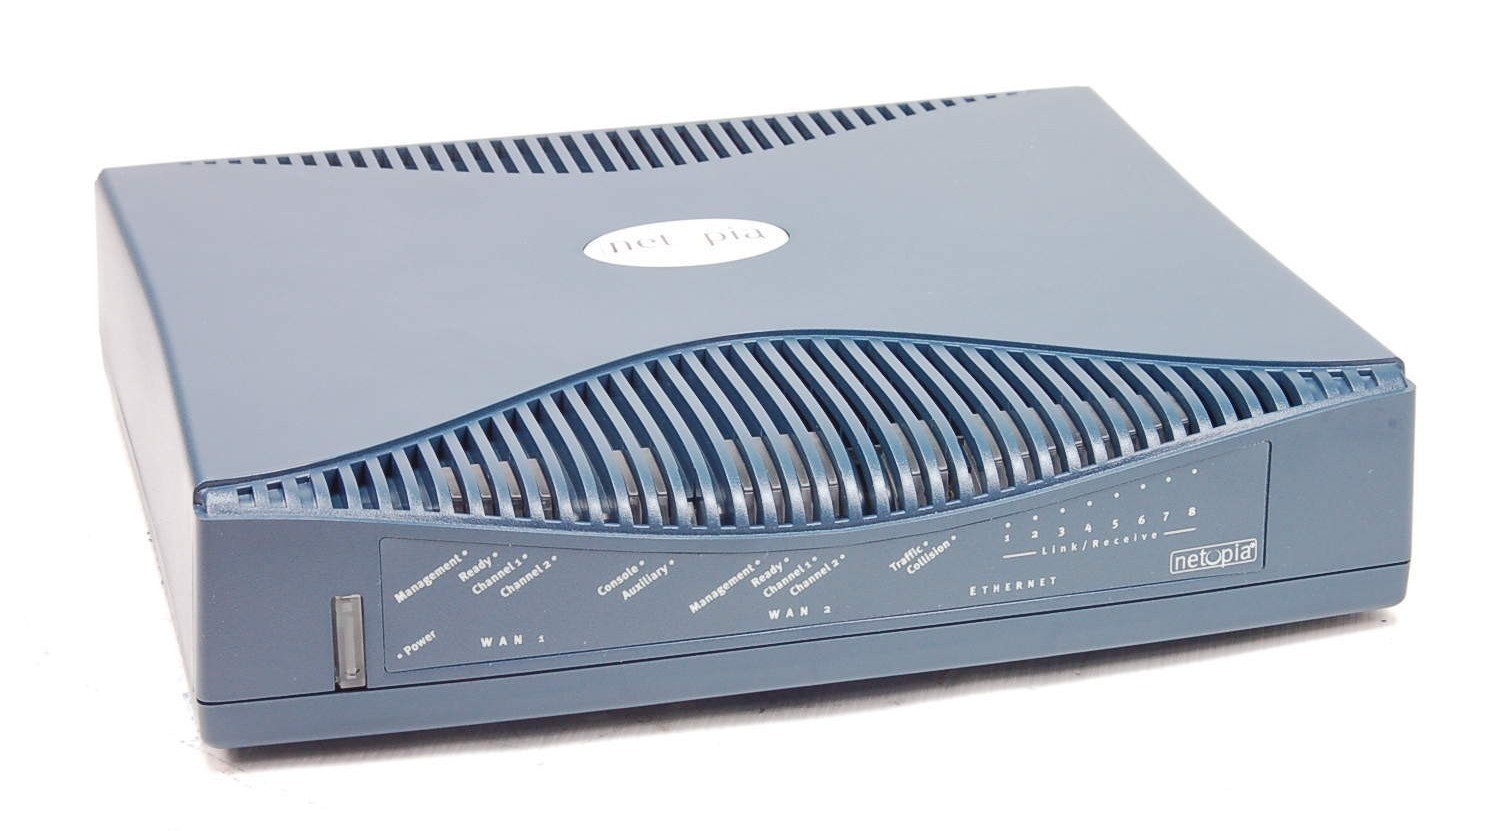 Netopia R7100-C SDSL Router